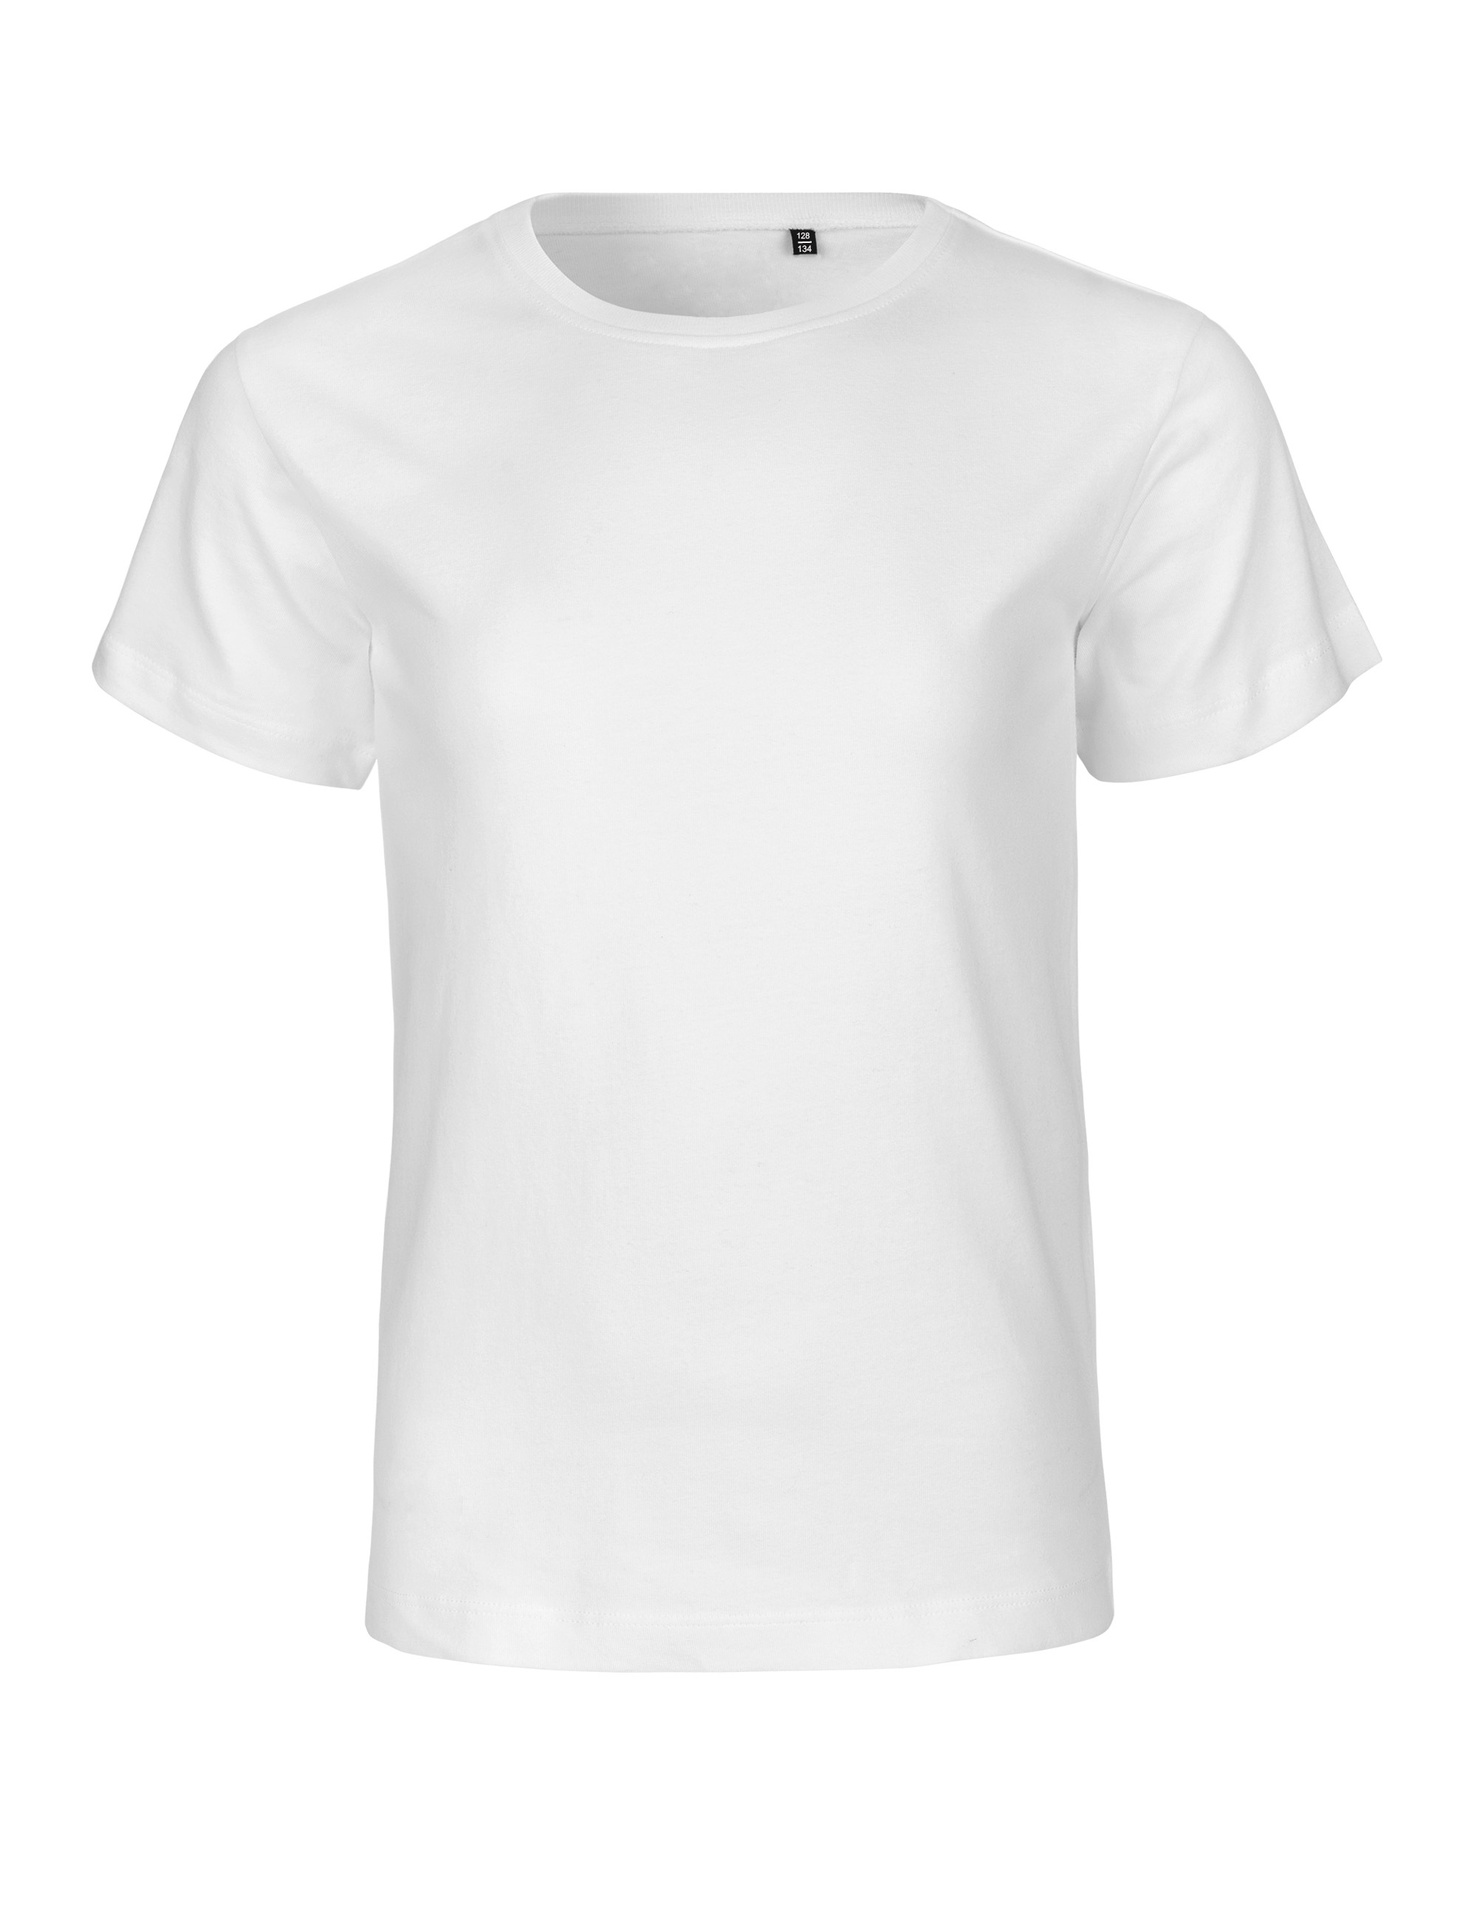 [PR/05960] Kids Tiger Cotton T-Shirt (White 01, 104/110 cm)